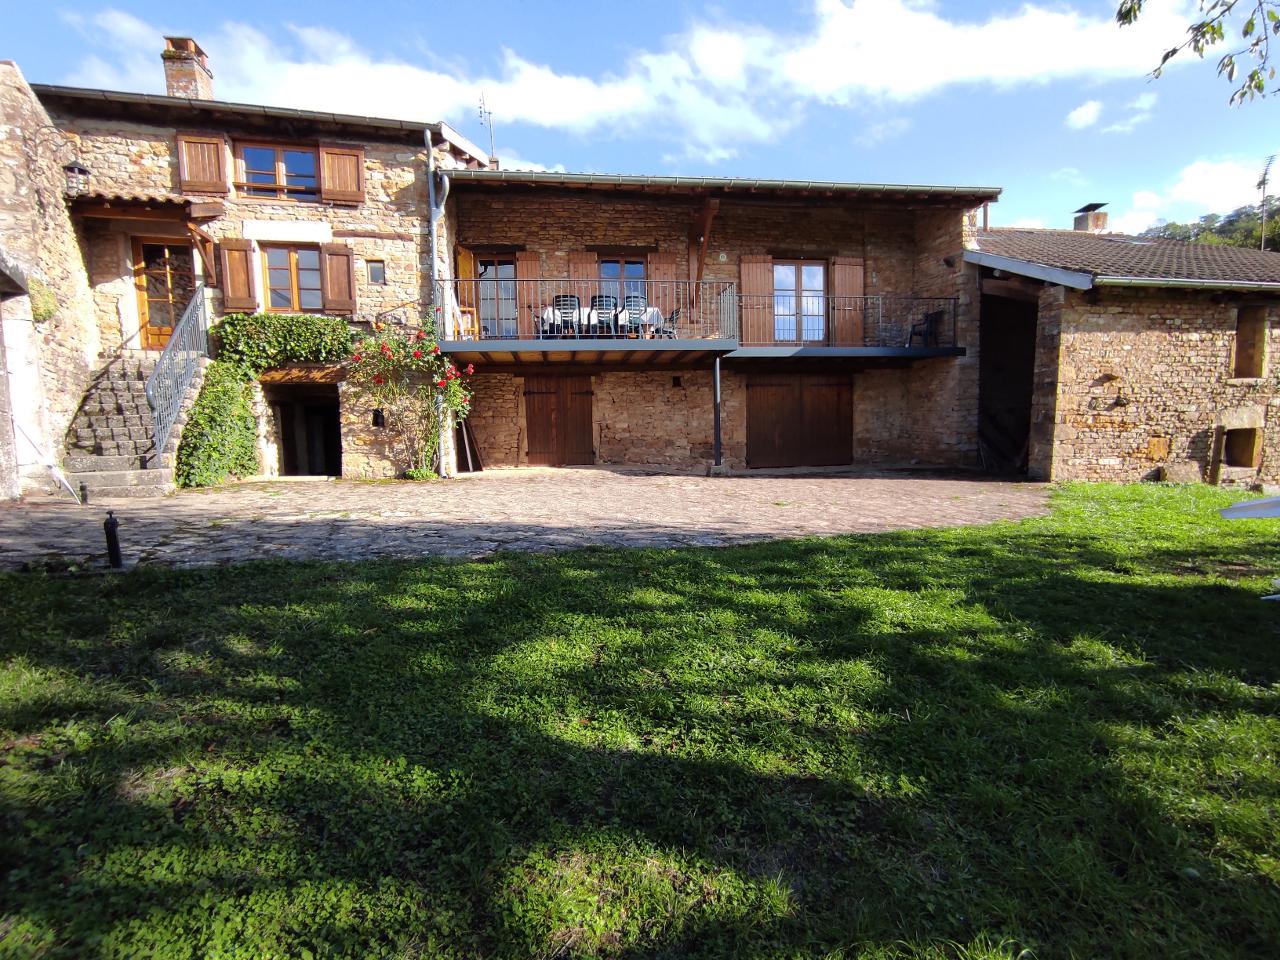 Hôte GreenGo: Maison de famille en Bourgogne proche de Cluny